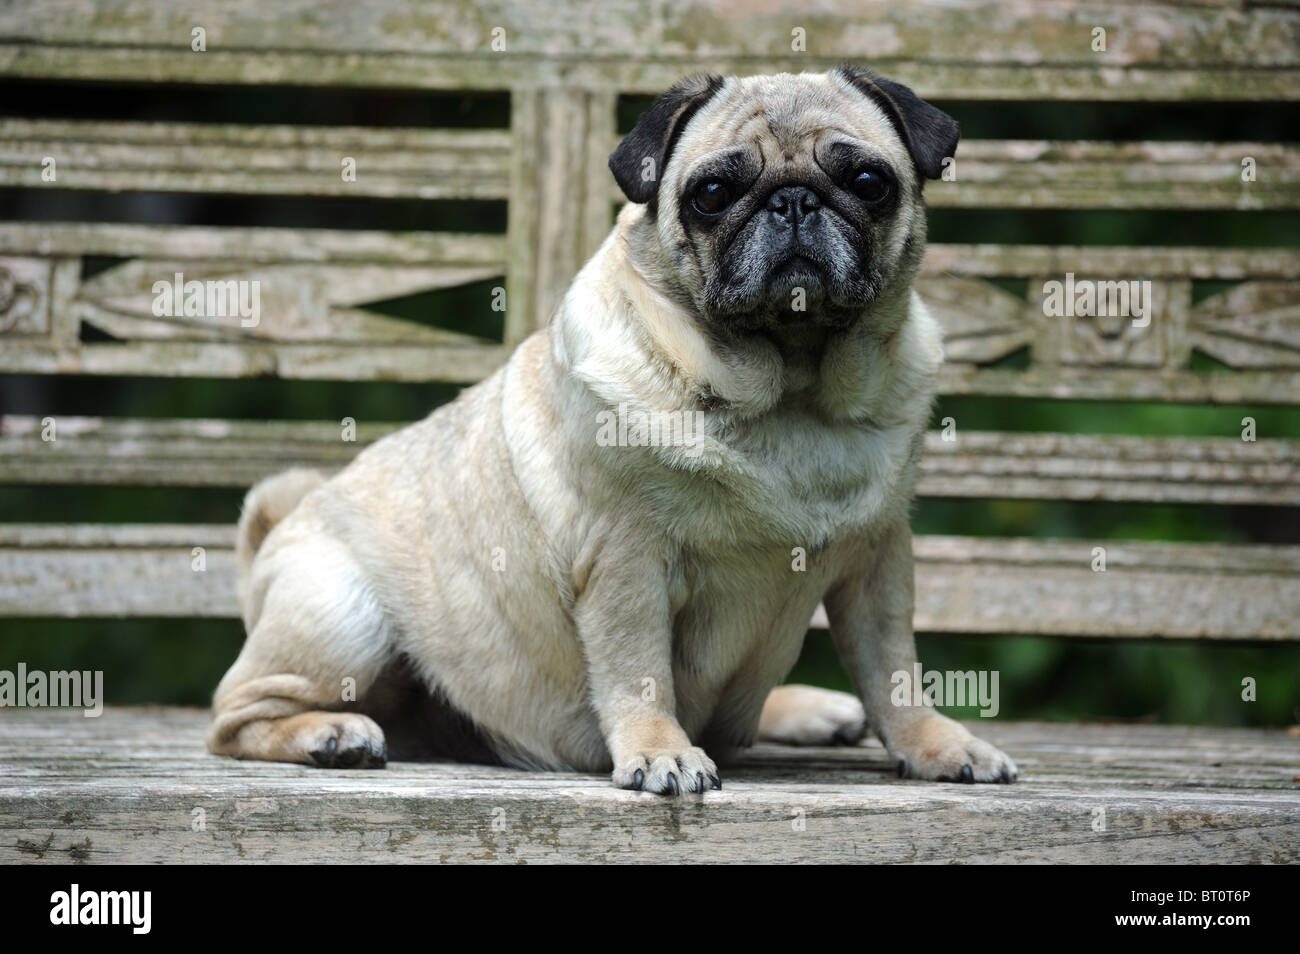 Le PUG (Canis lupus familiaris). Vieux chien assis sur une banque. Banque D'Images